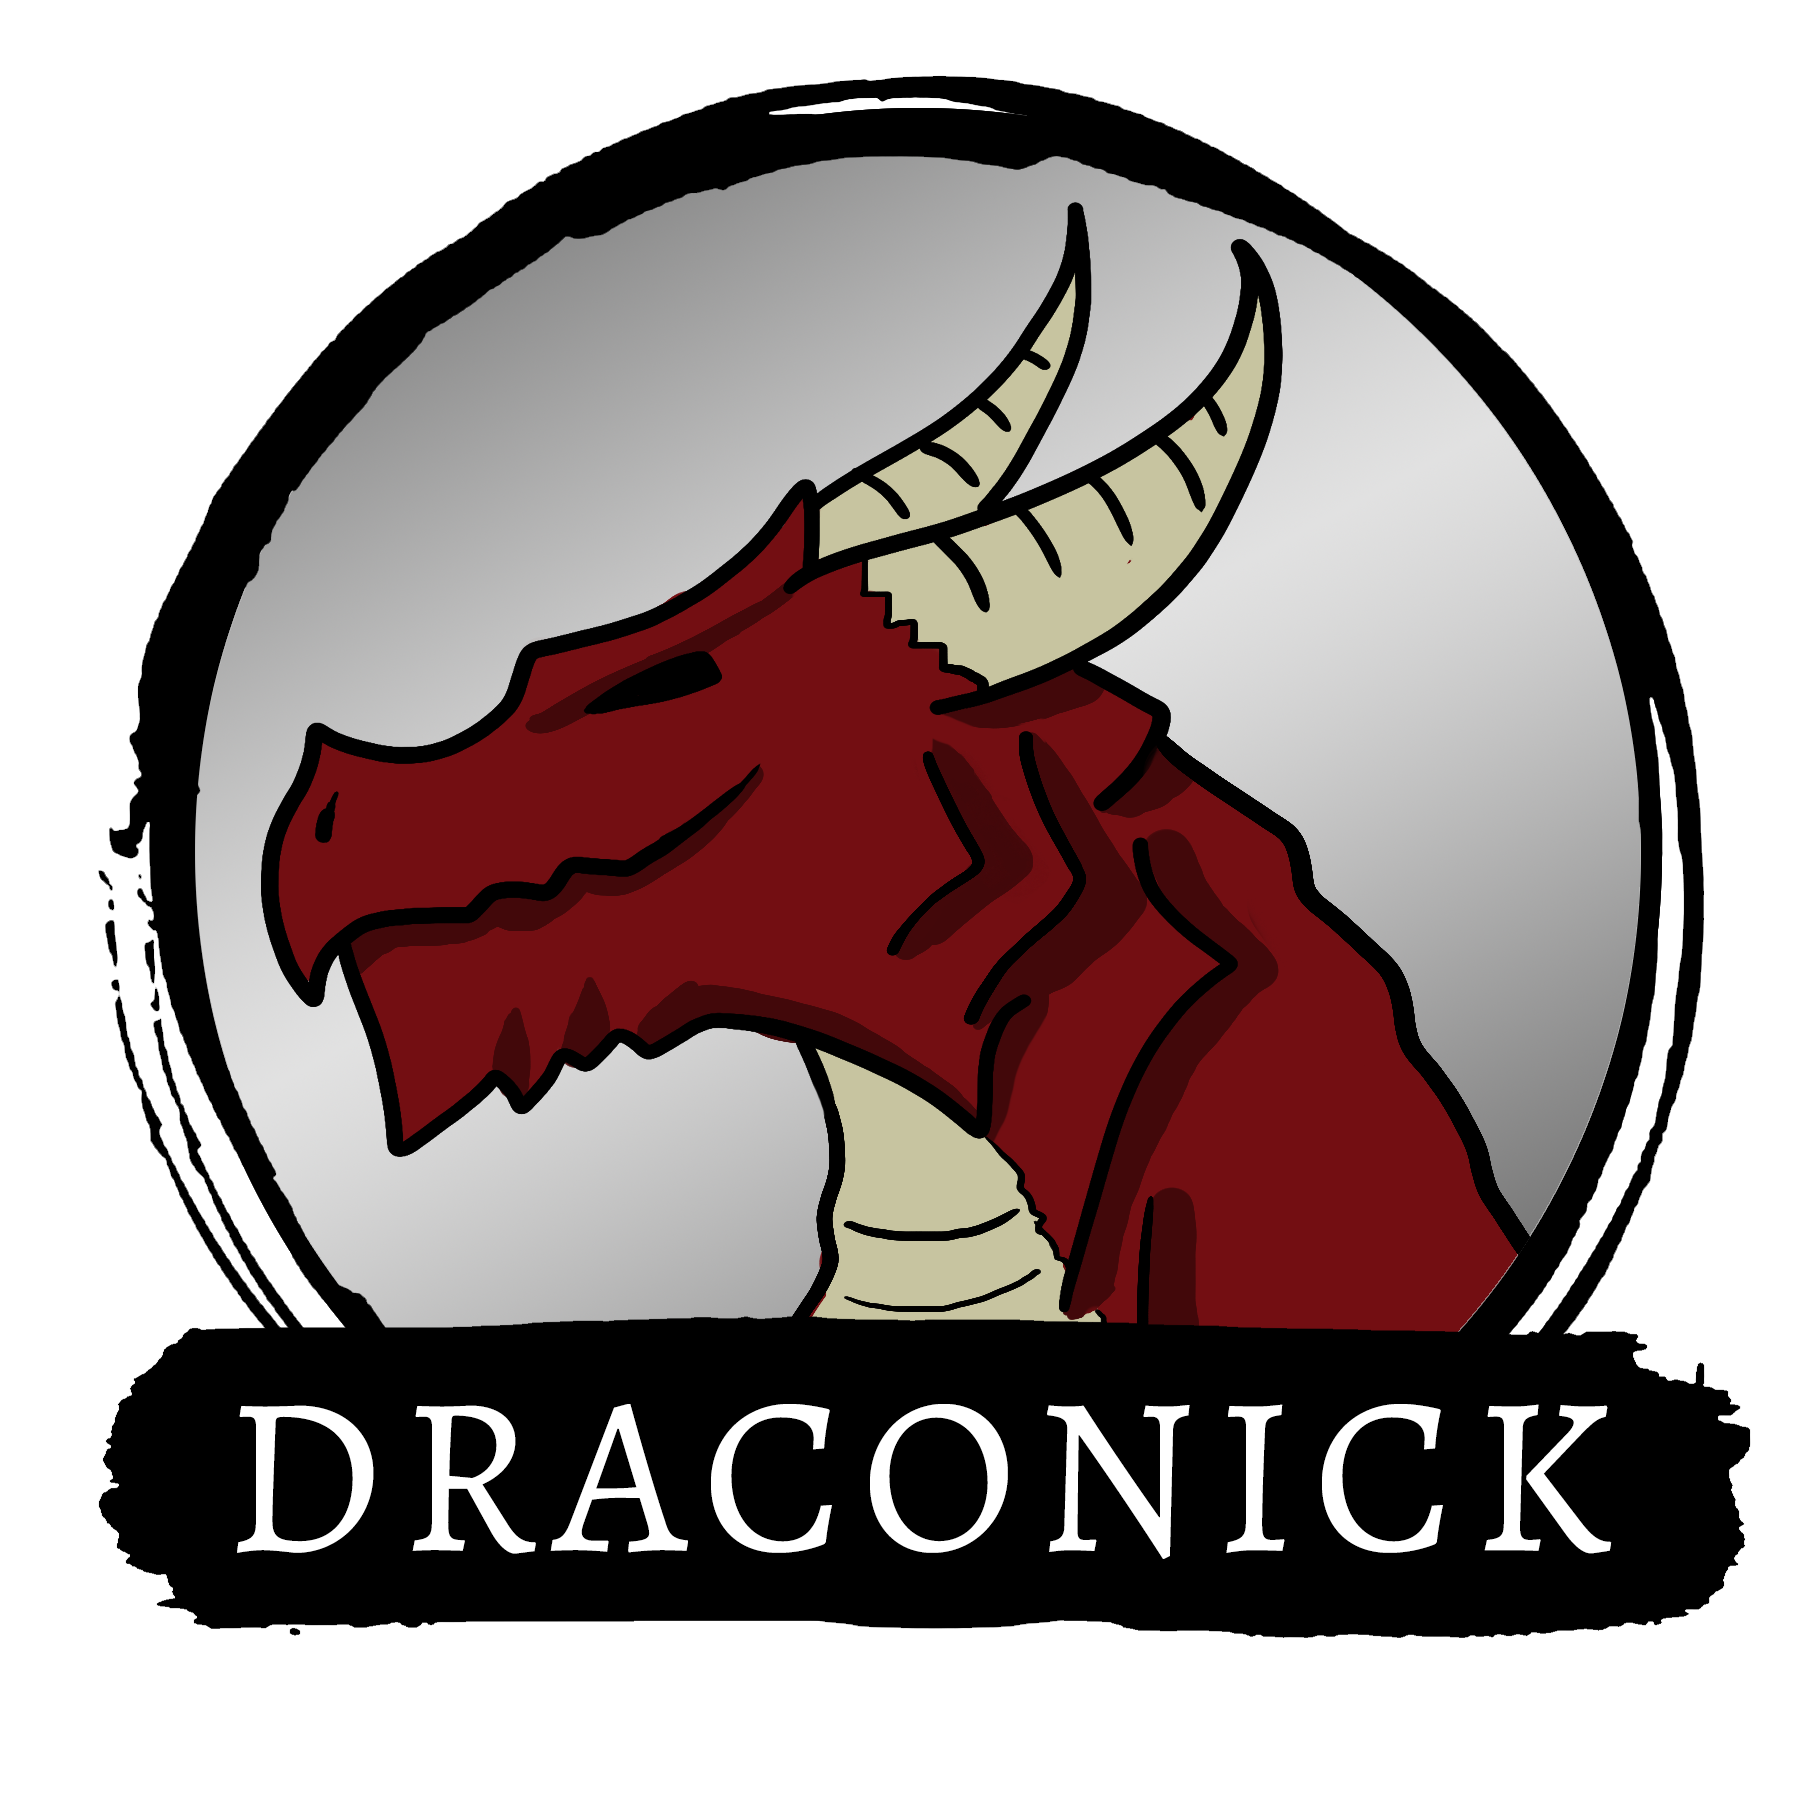 Draconick